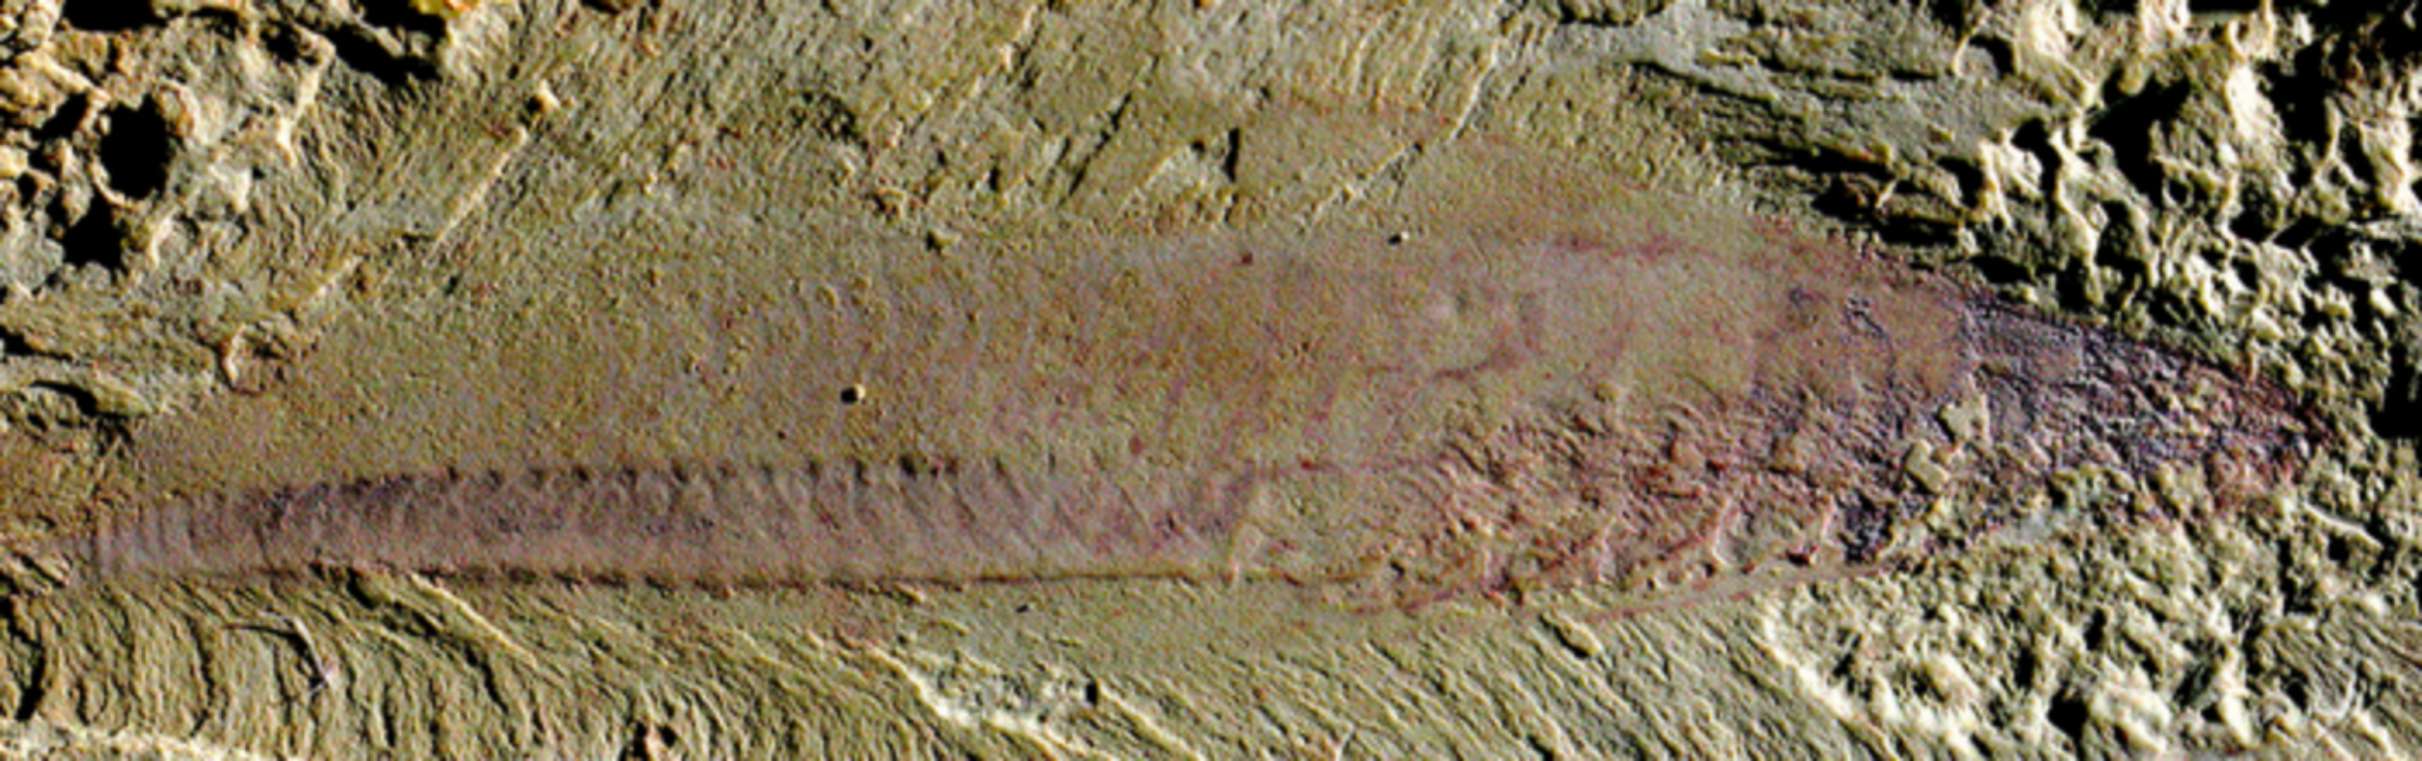 Fosil ikan (Myllokunmingia)